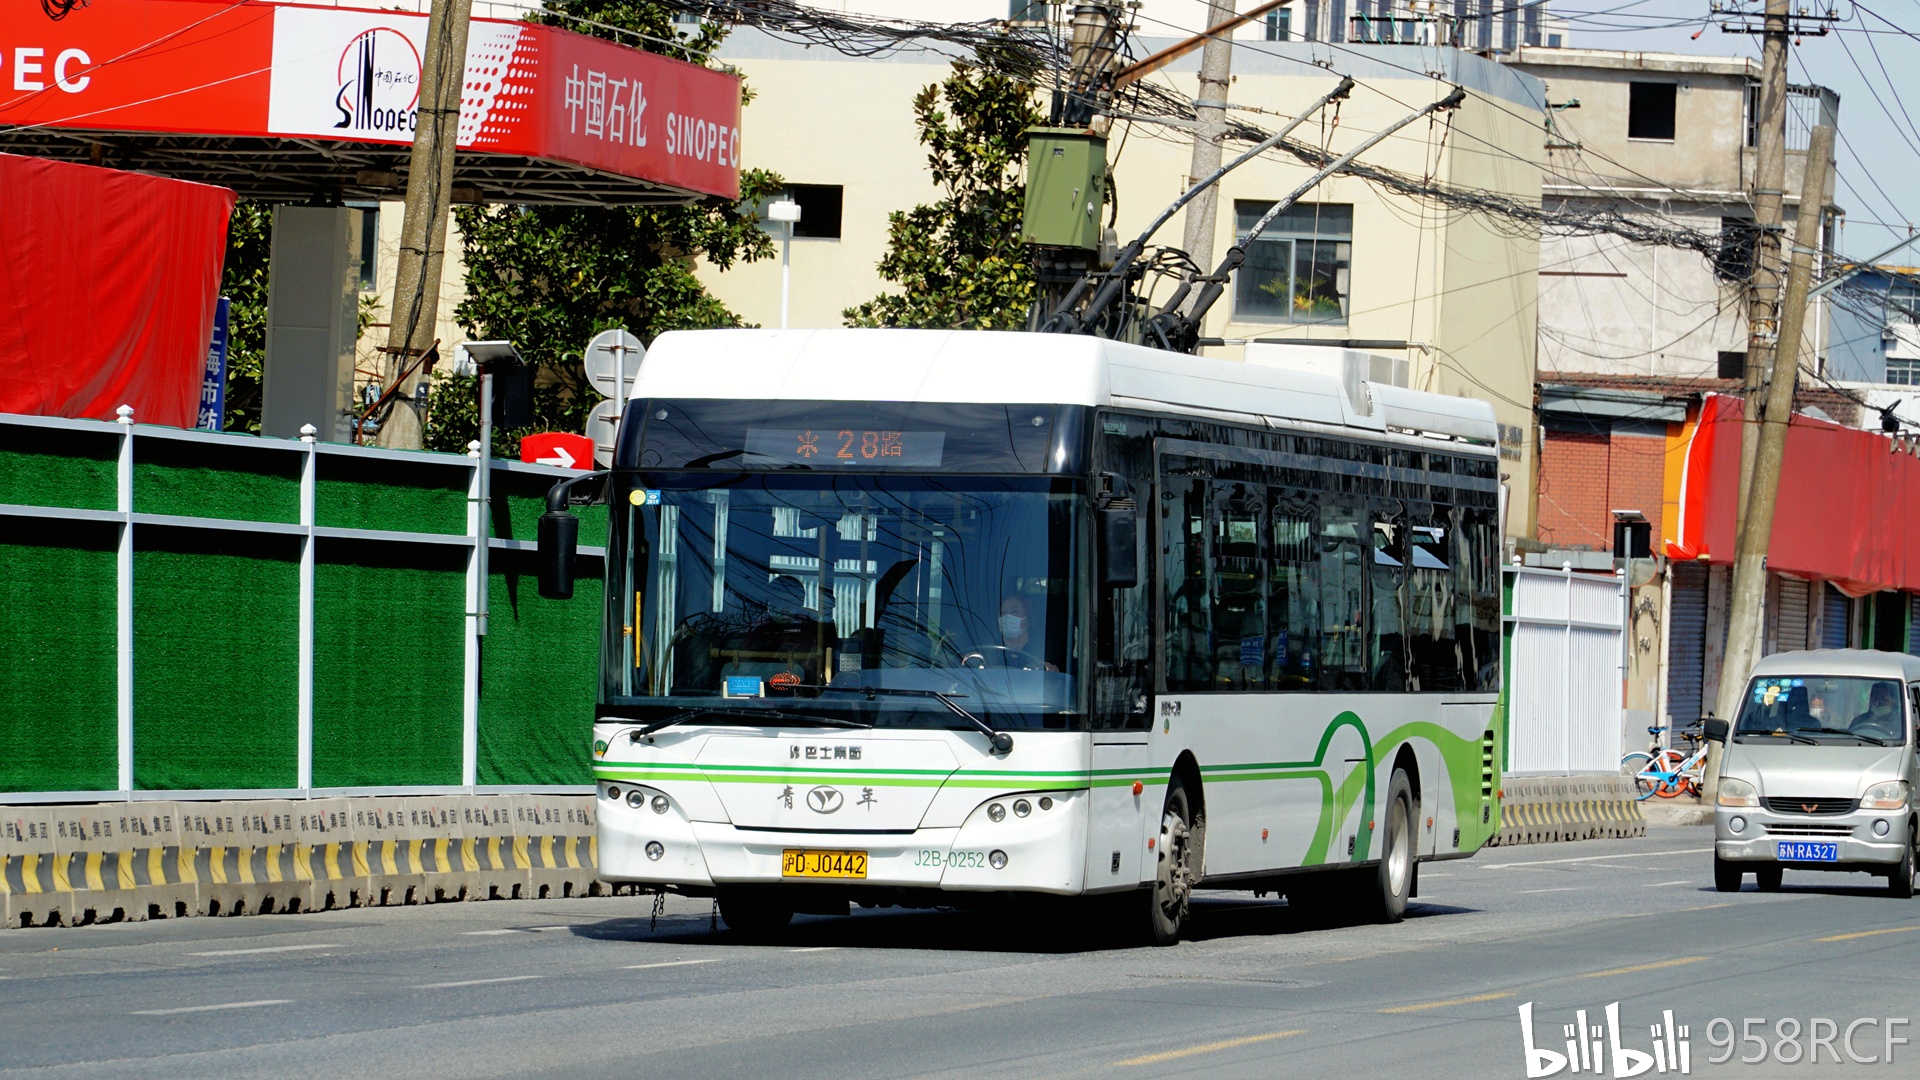 上海首投比亚迪纯电动双层巴士 打造绿色旅游“新名片”-提加商用车网